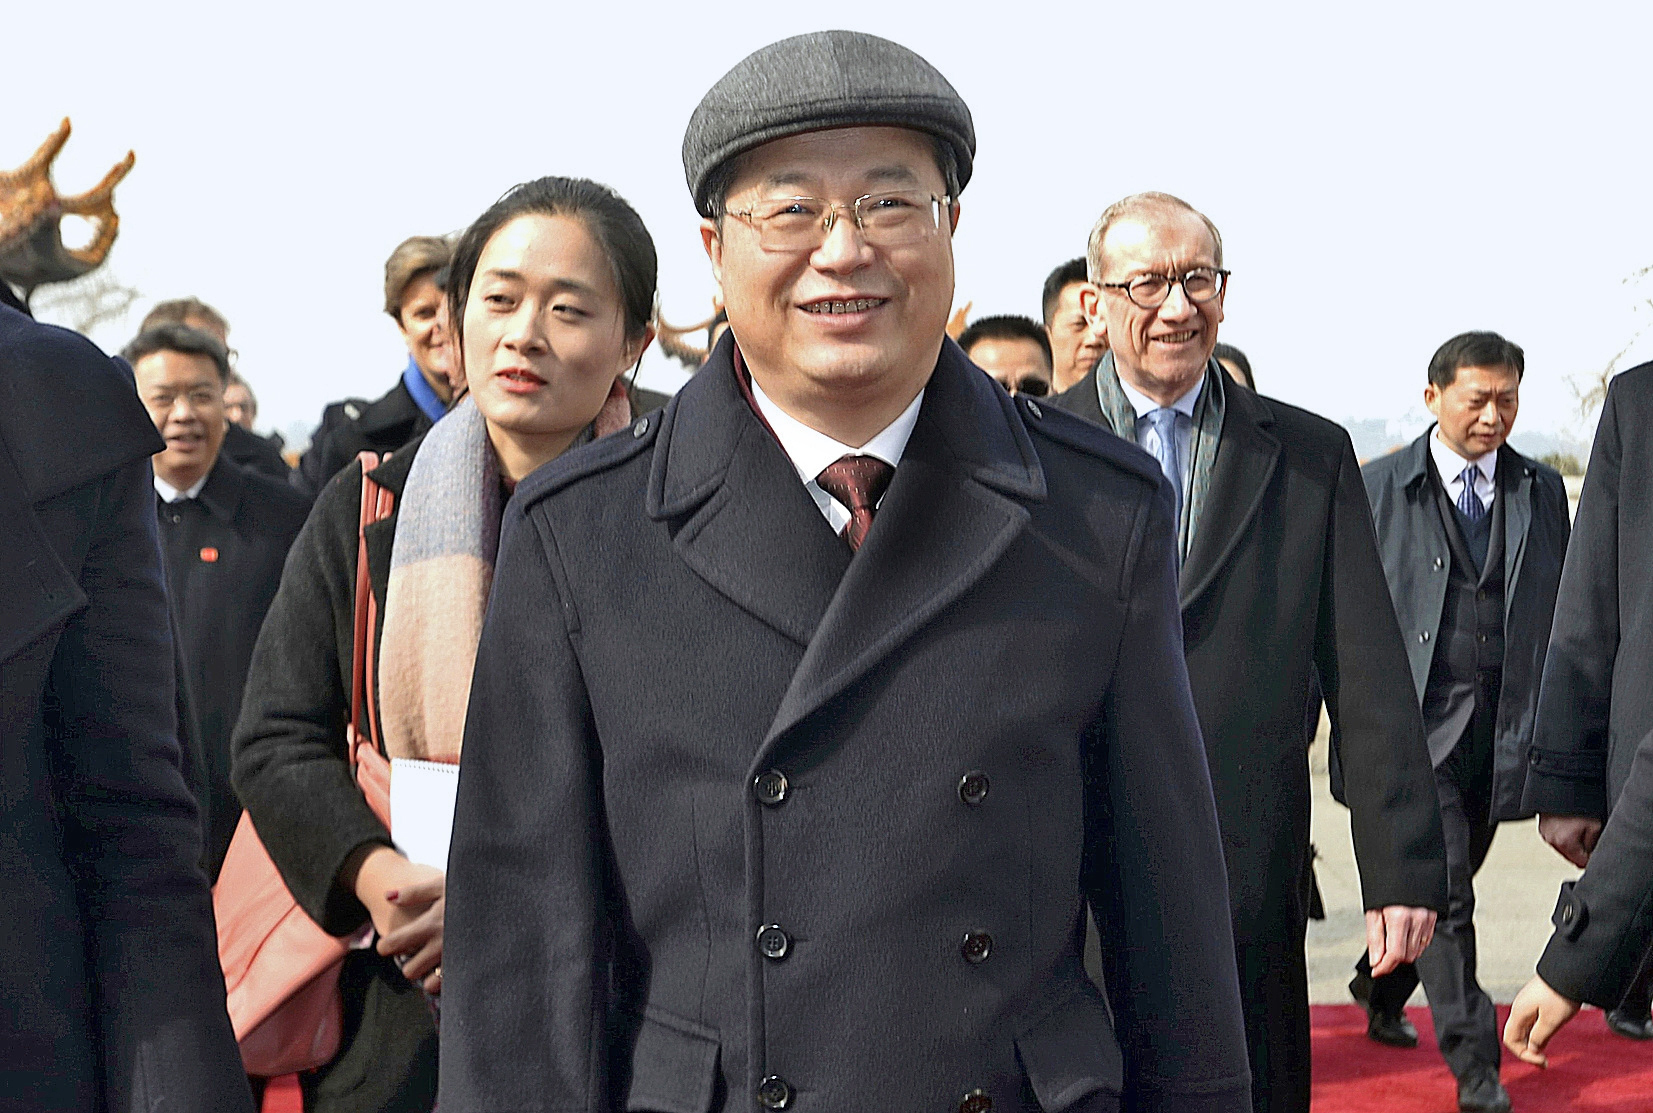 Chen Yixin, jefe de la Inteligencia china que se encarg al principio de la pandemia de controlar los conatos de protesta.